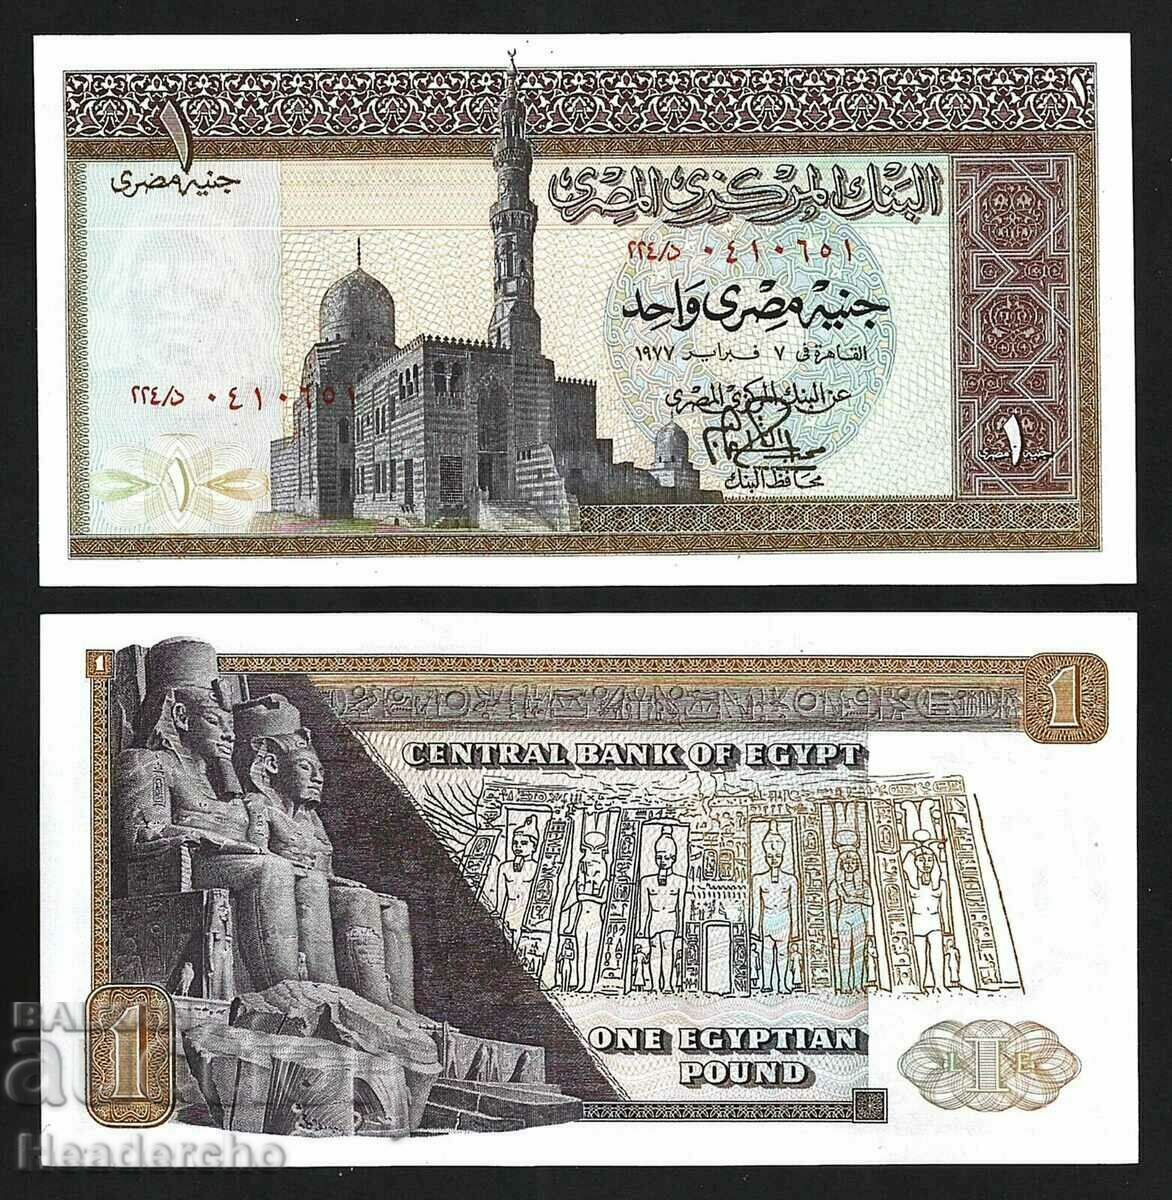 Лот стари и нови серии банкноти от цял свят партида 3!